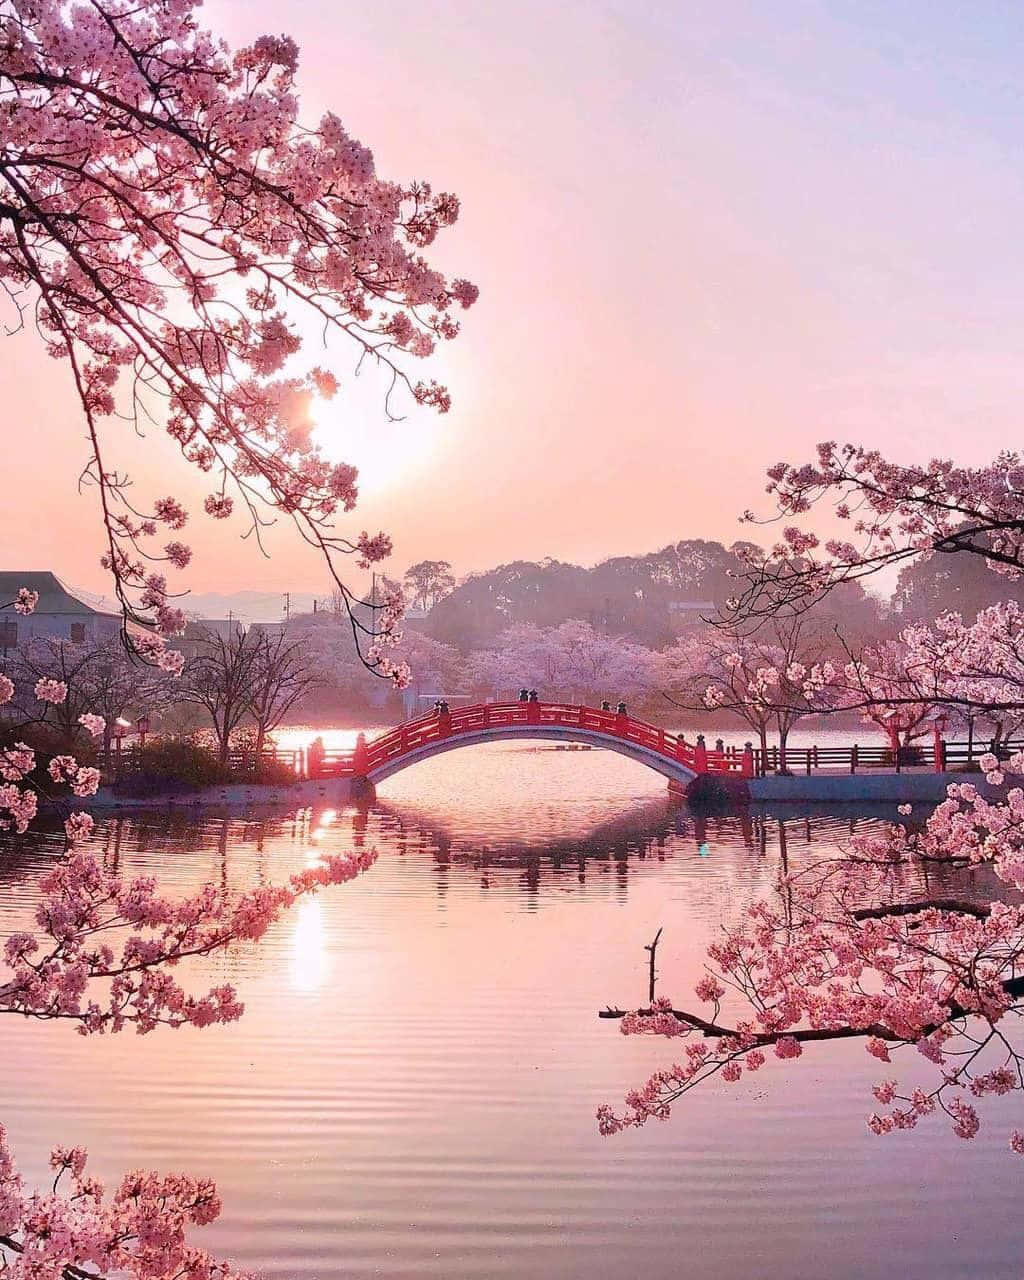 The beauty of nature seen in this stunning sakura tree.